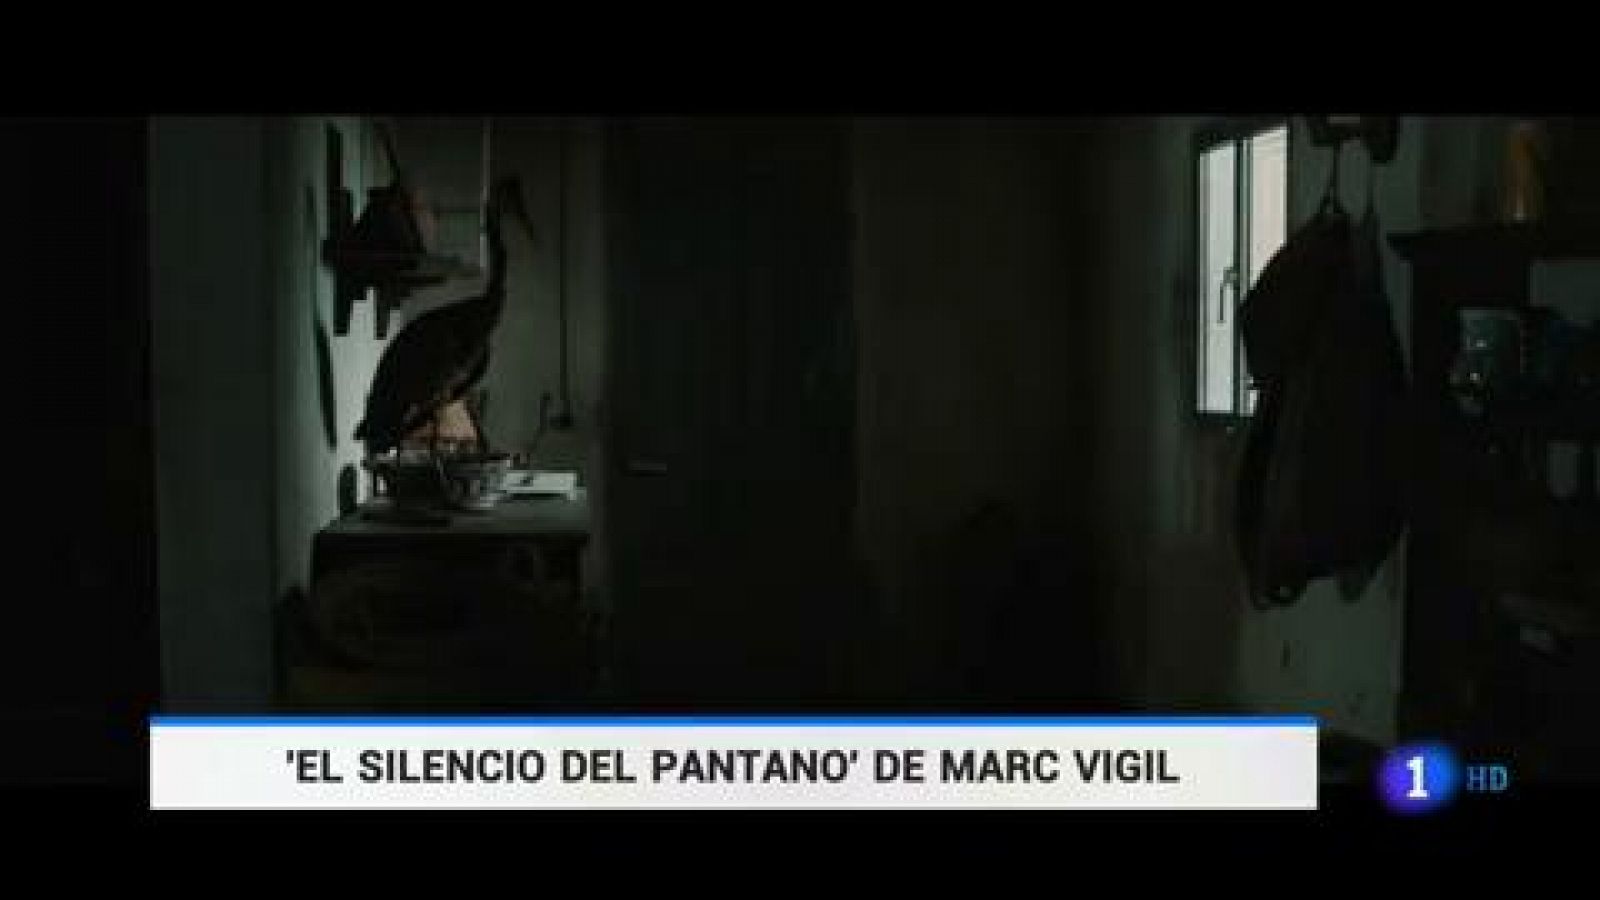 El director Marc Vigil estrena su primera película: 'El silencio del pantano'